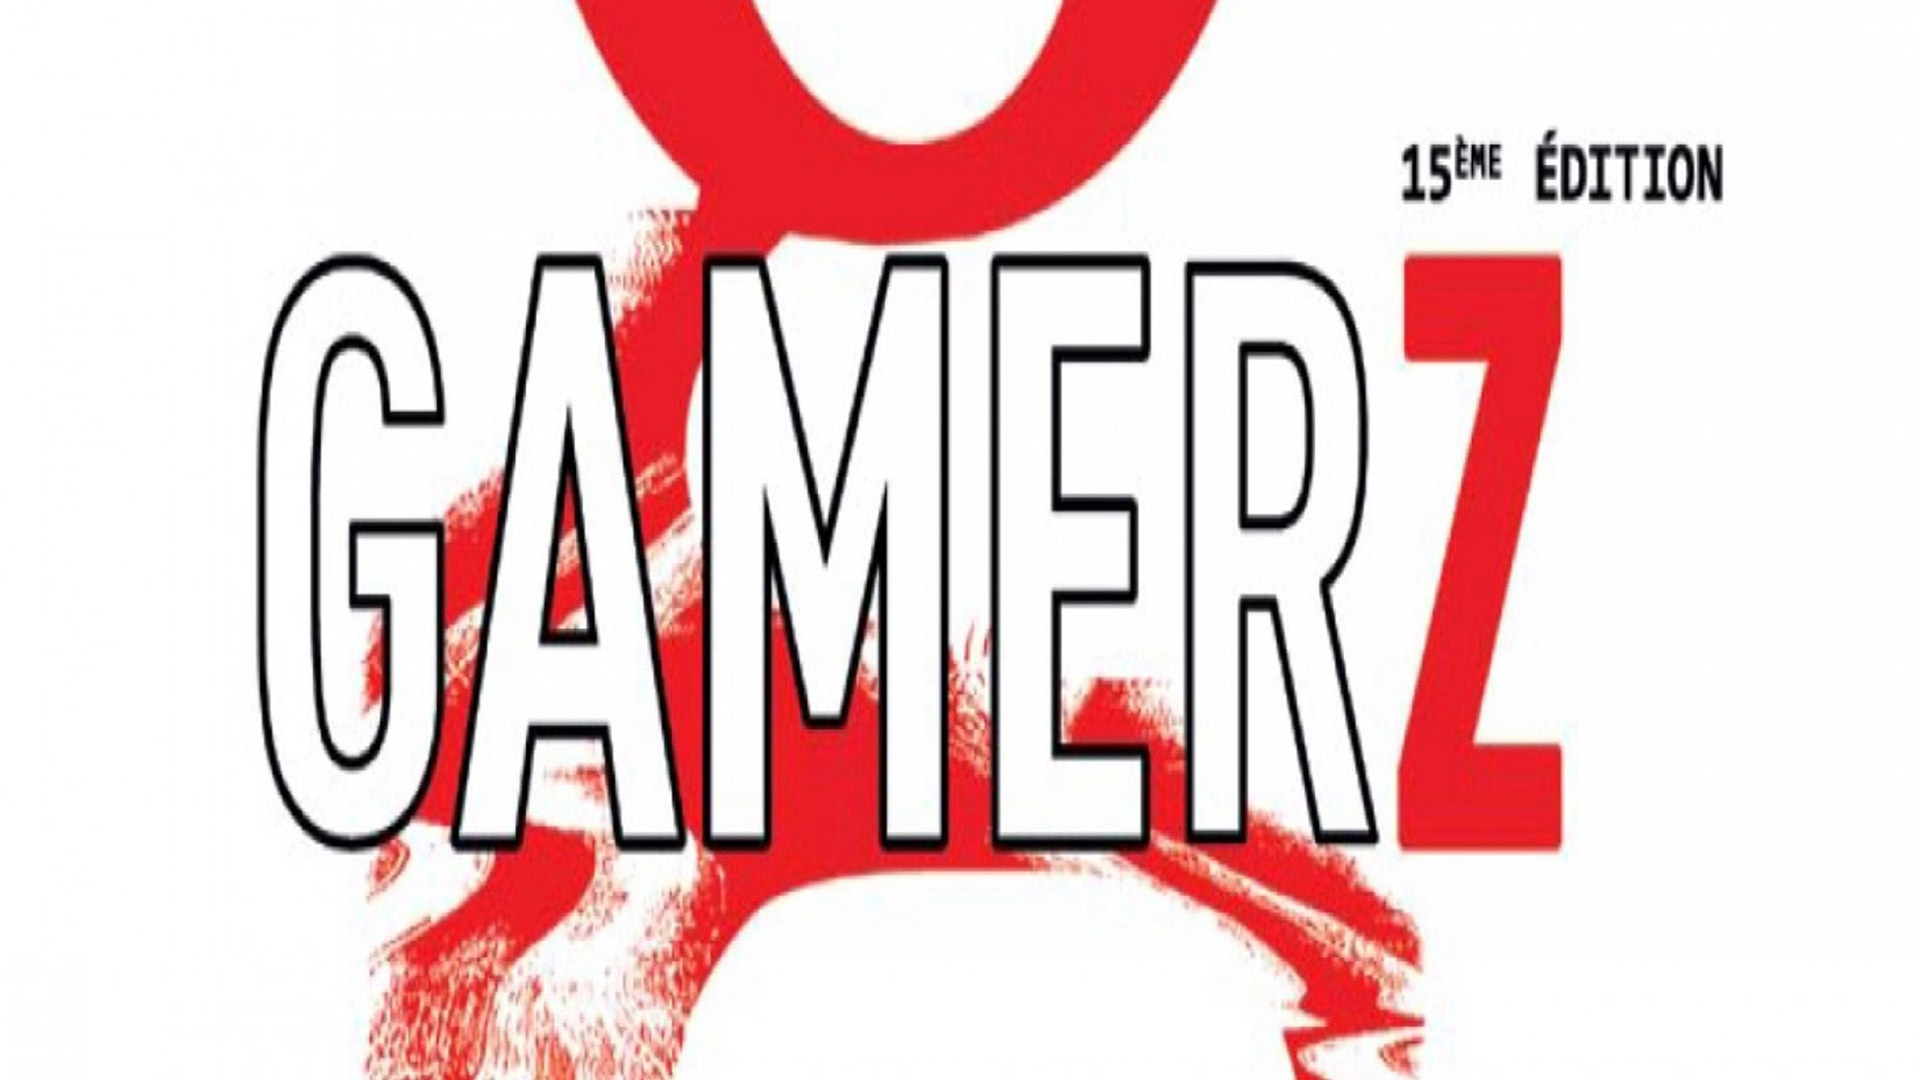 Festival Gamerz - 15ème édition